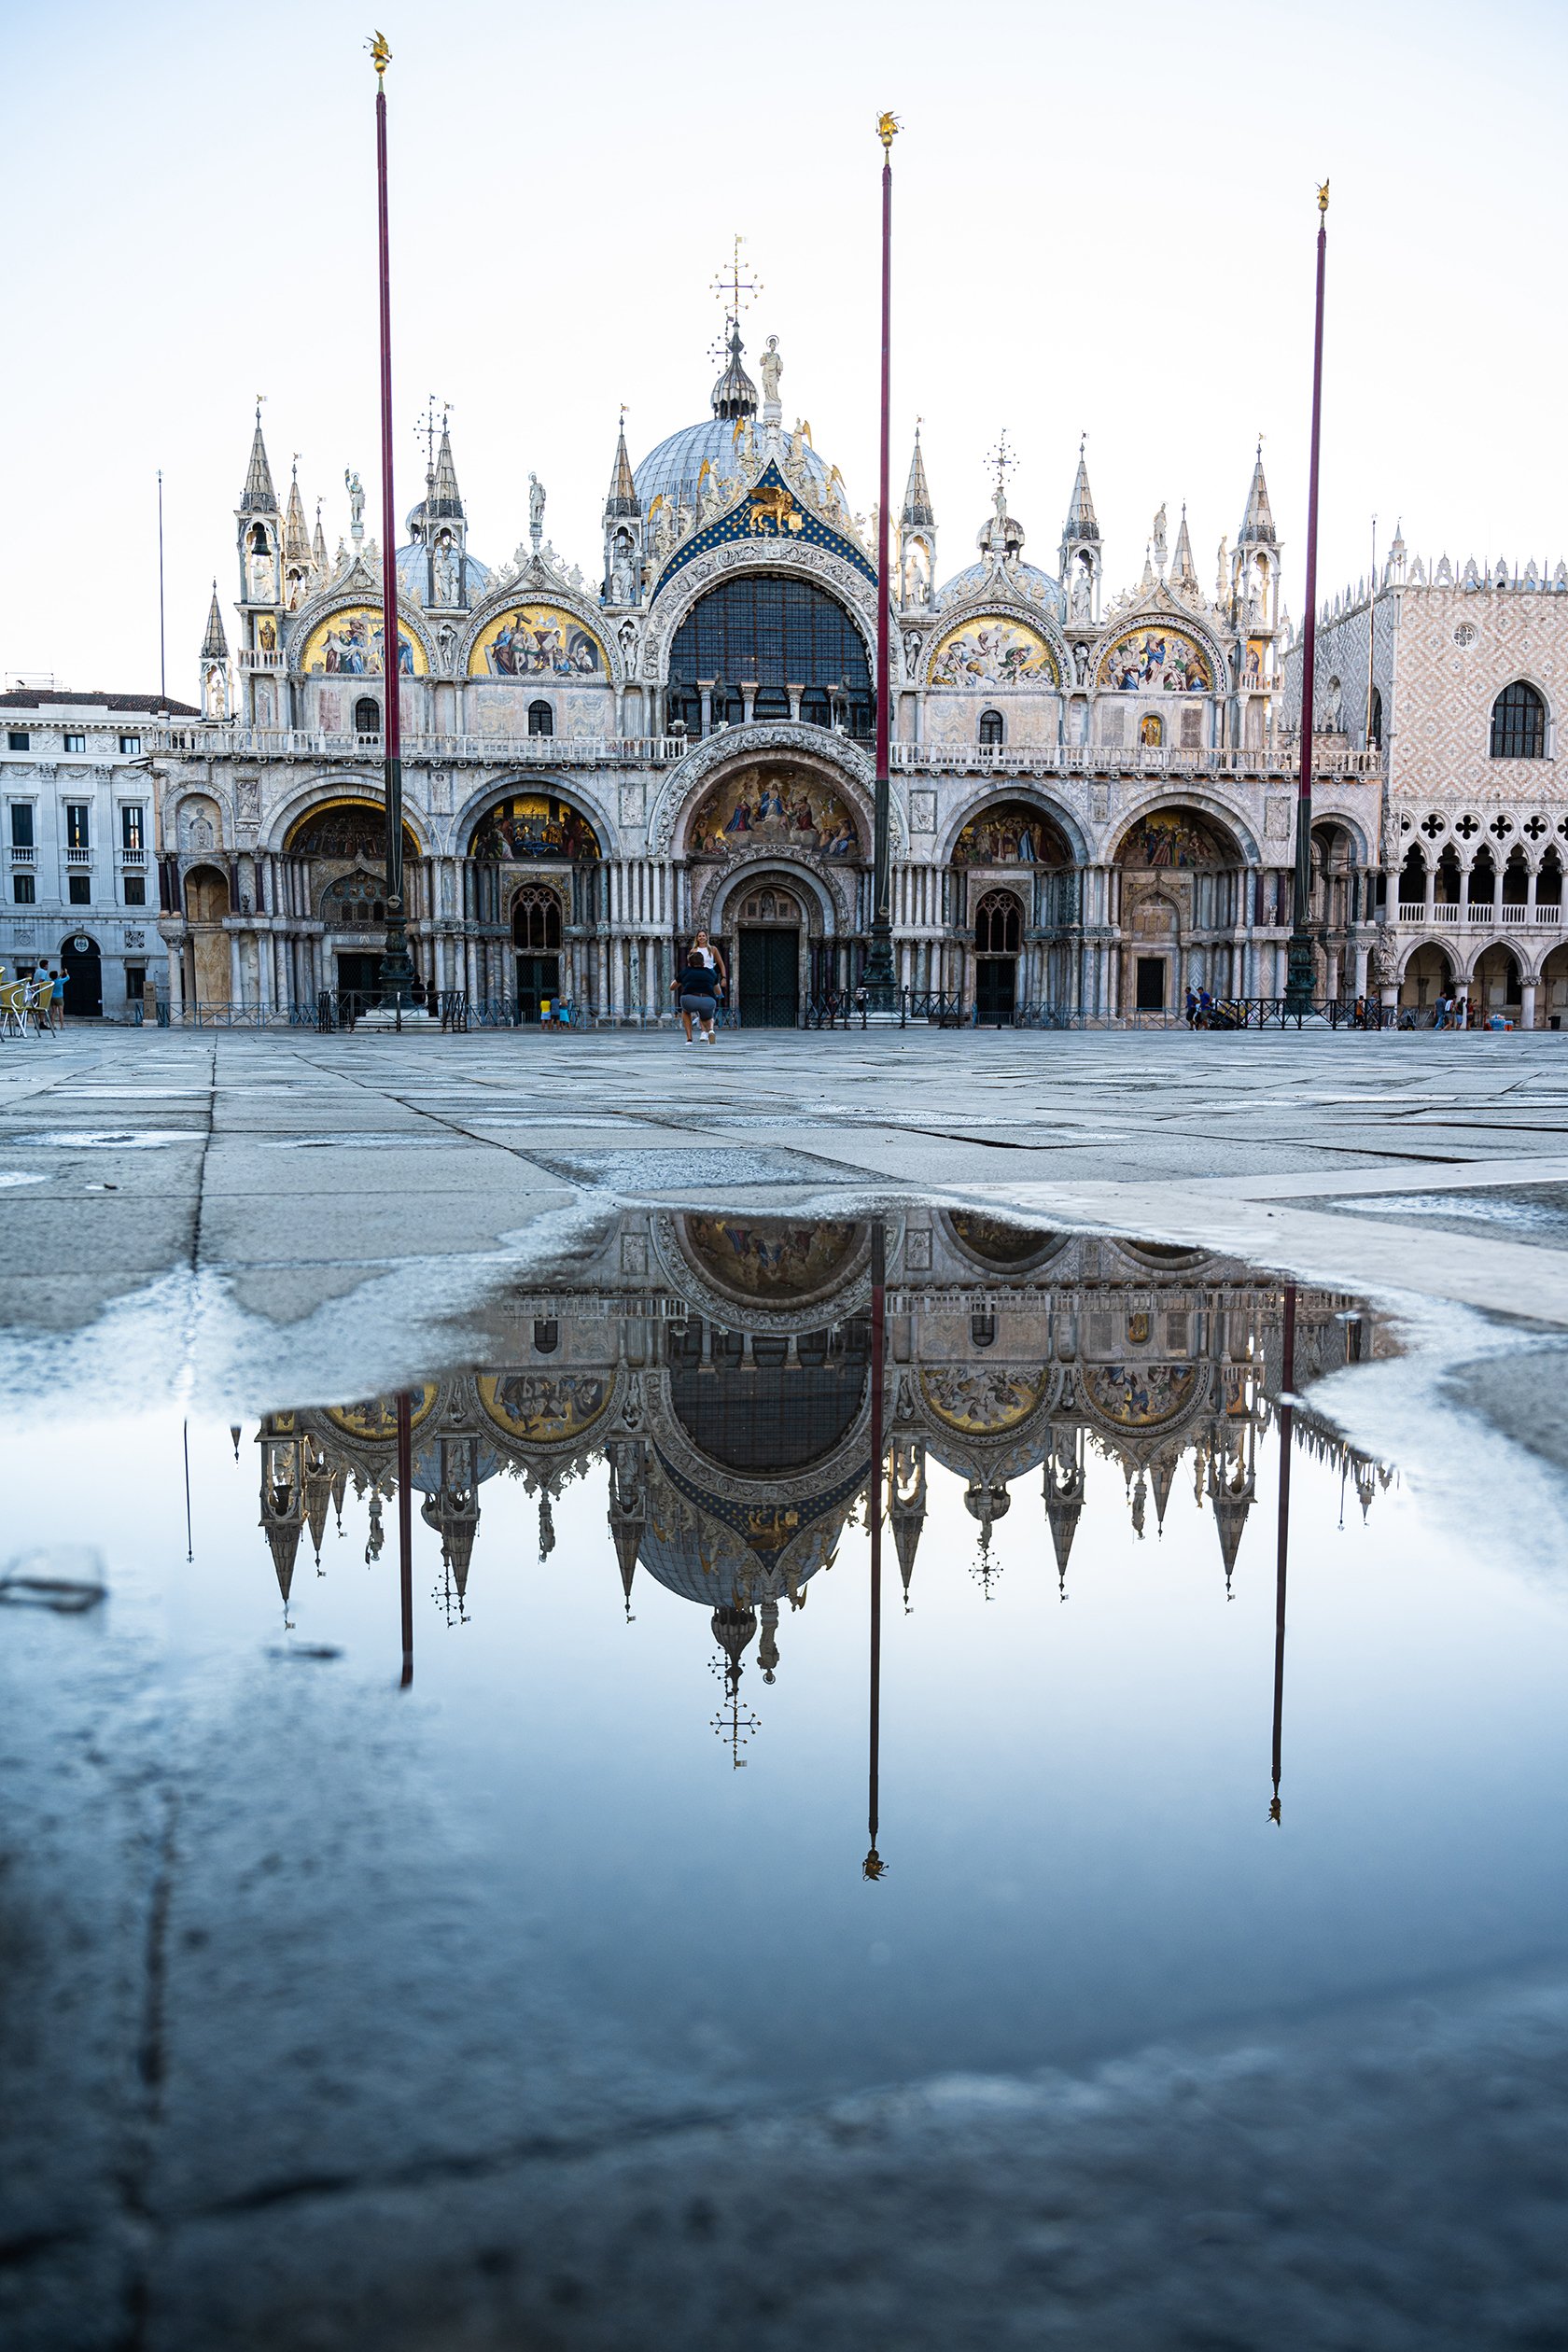 Venice in the rain